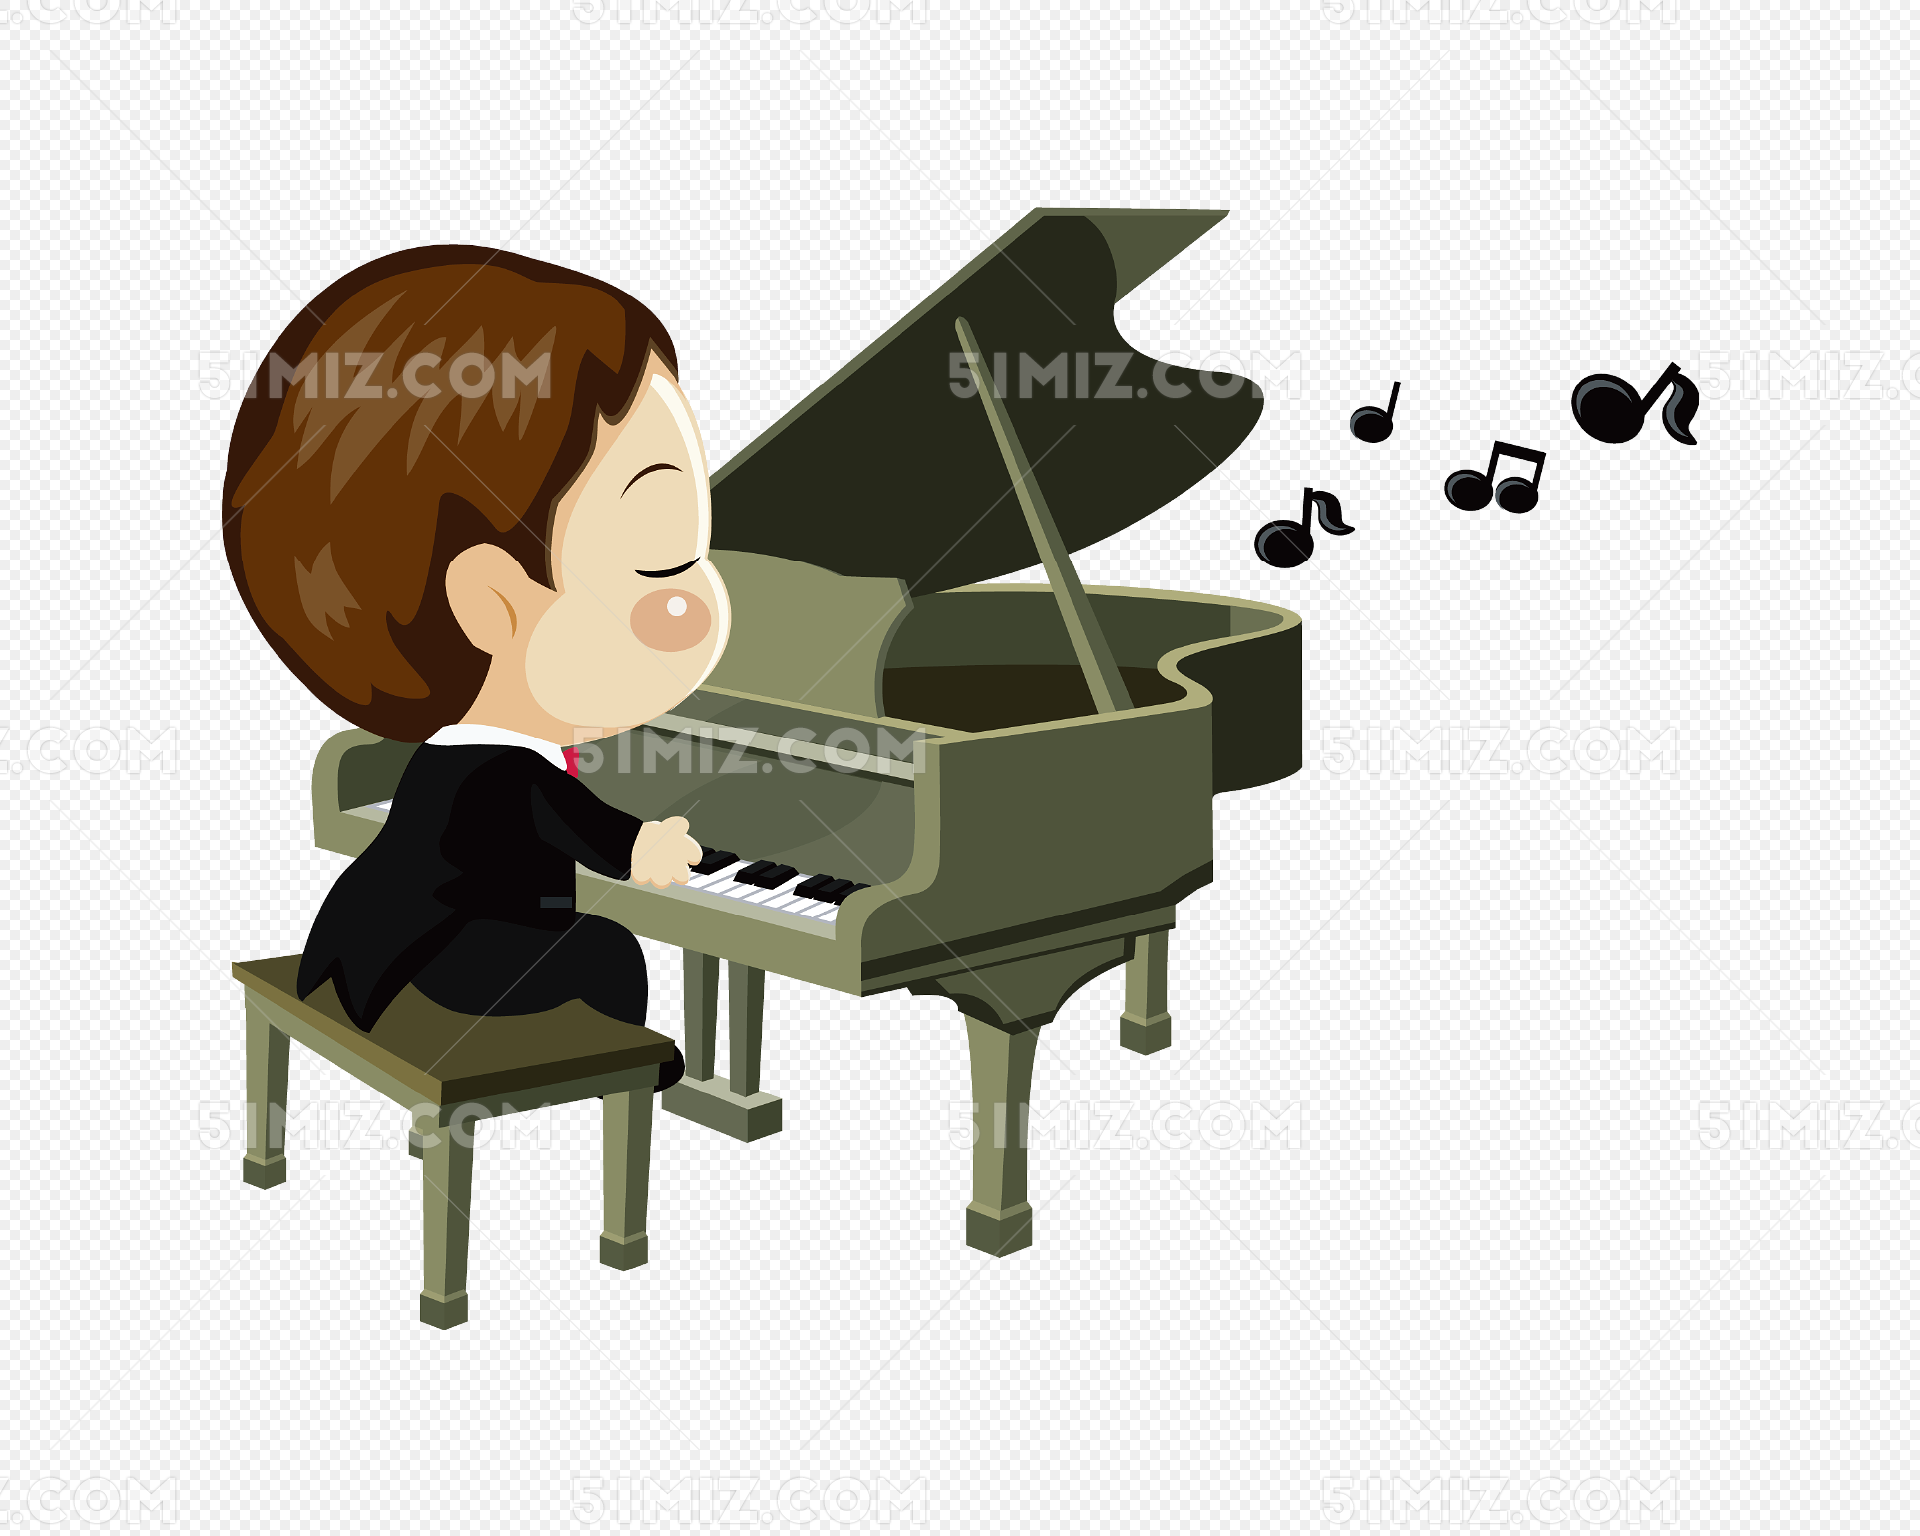 弹钢琴的人物图片大全-弹钢琴的人物高清图片下载-觅知网